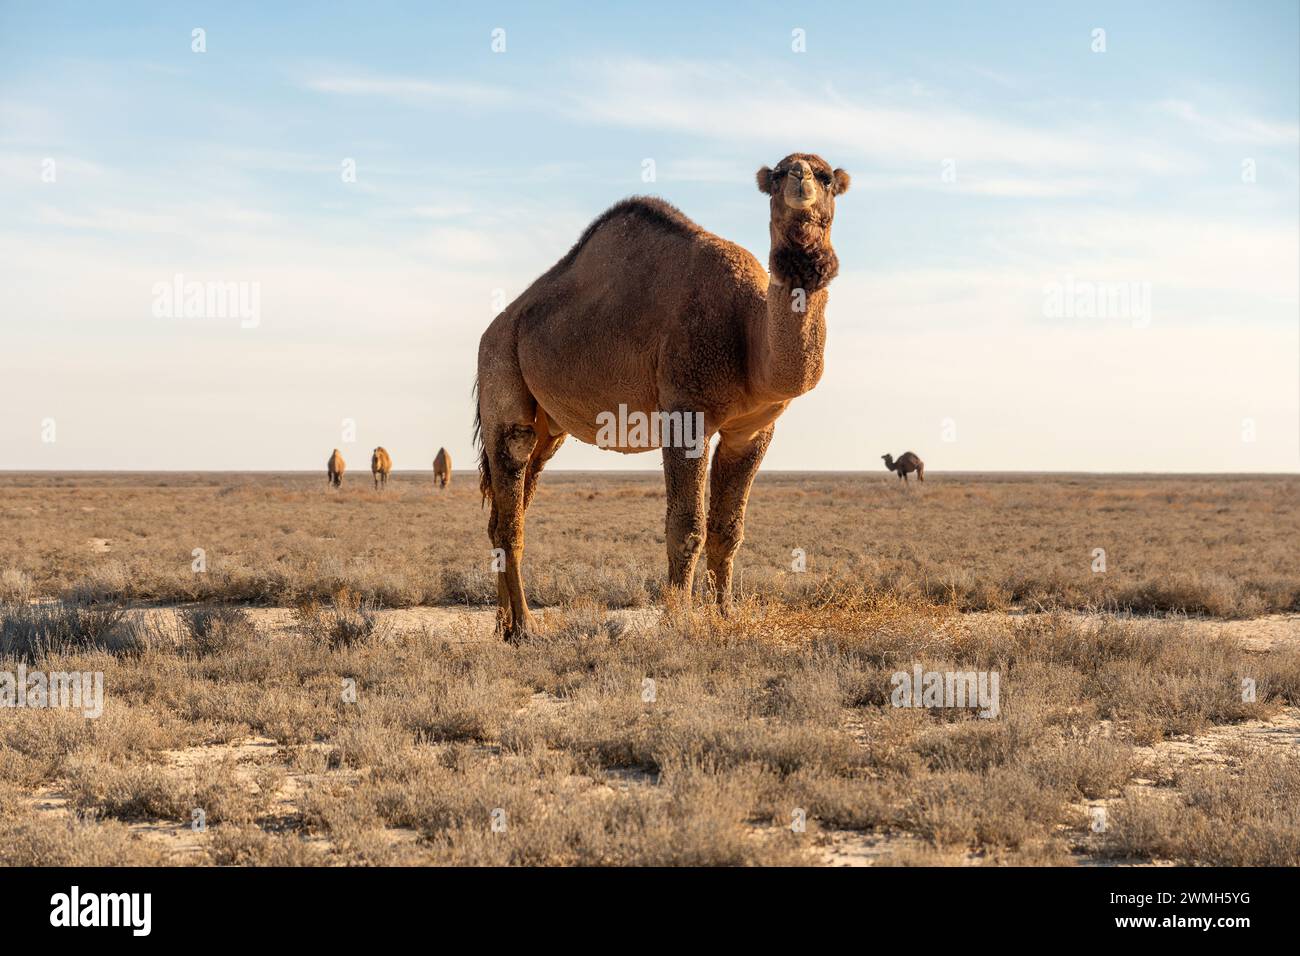 Wild camel in the Karakum desert Stock Photo